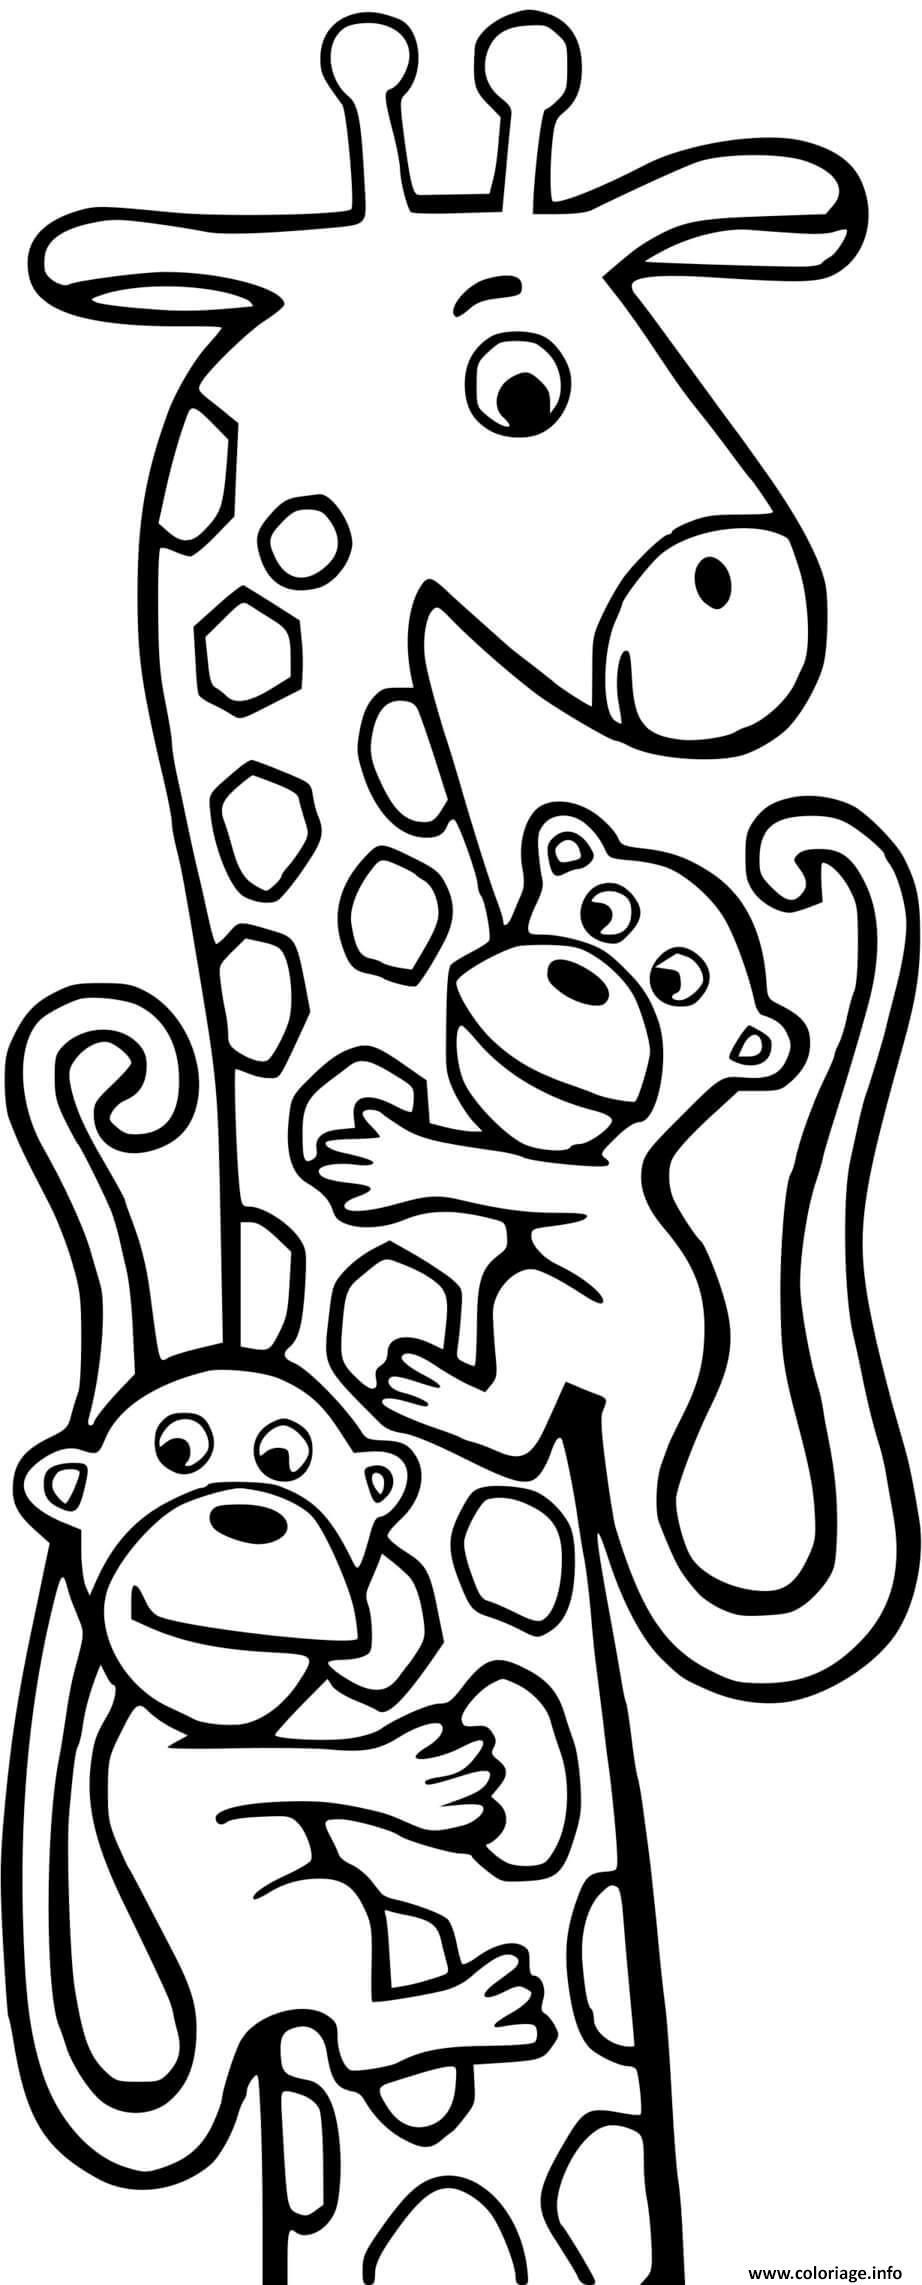 Dessin girafe et 2 singes Coloriage Gratuit à Imprimer